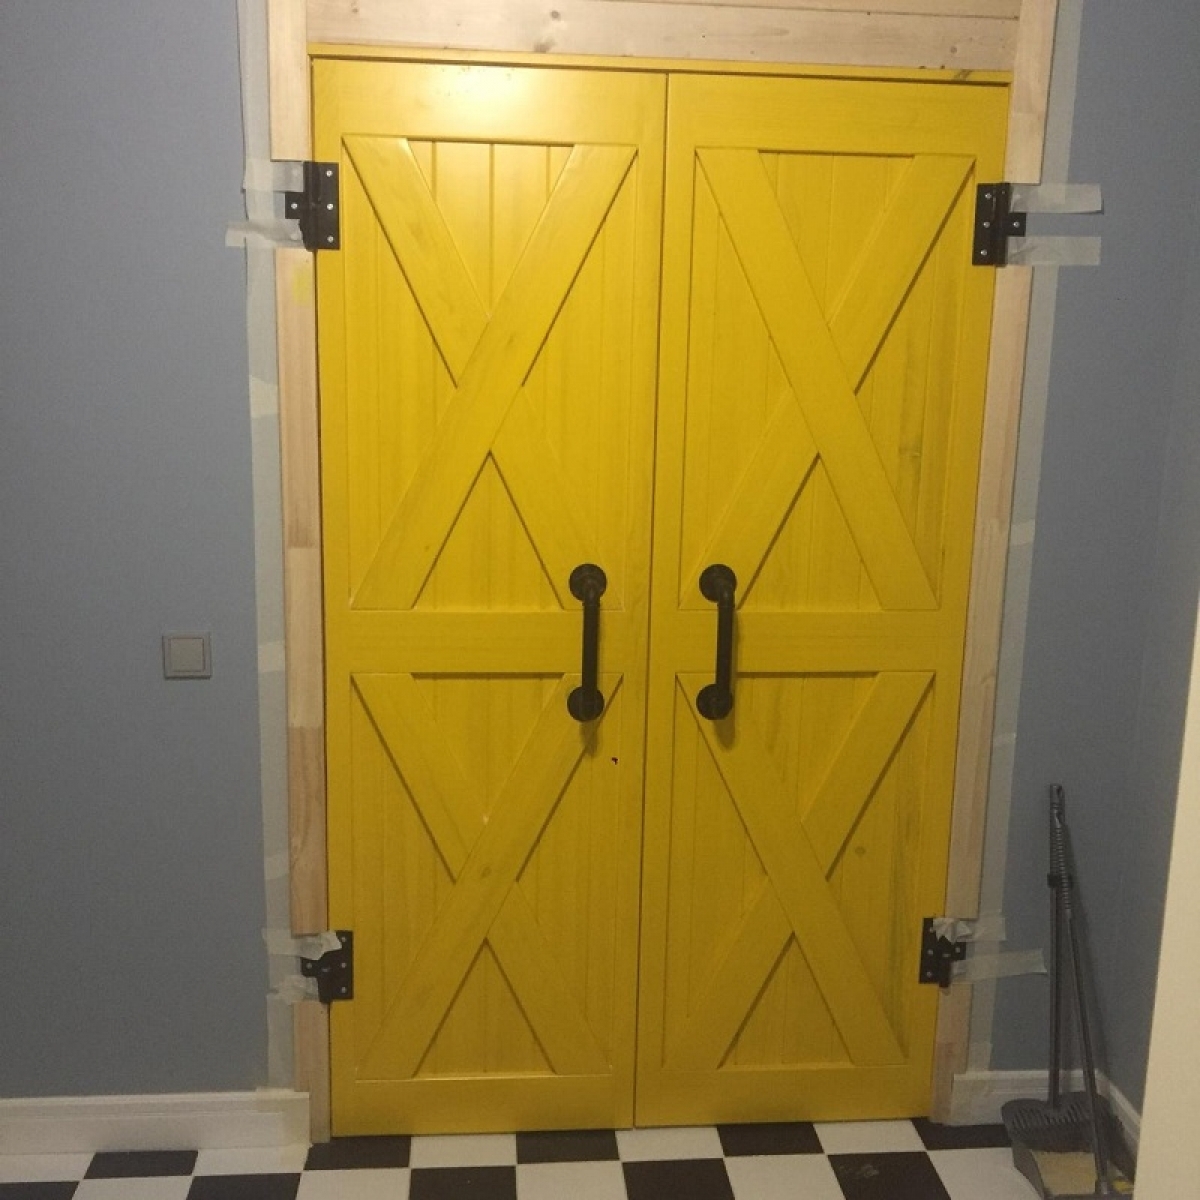 Дверь в стиле лофт двойная на кованых петлях